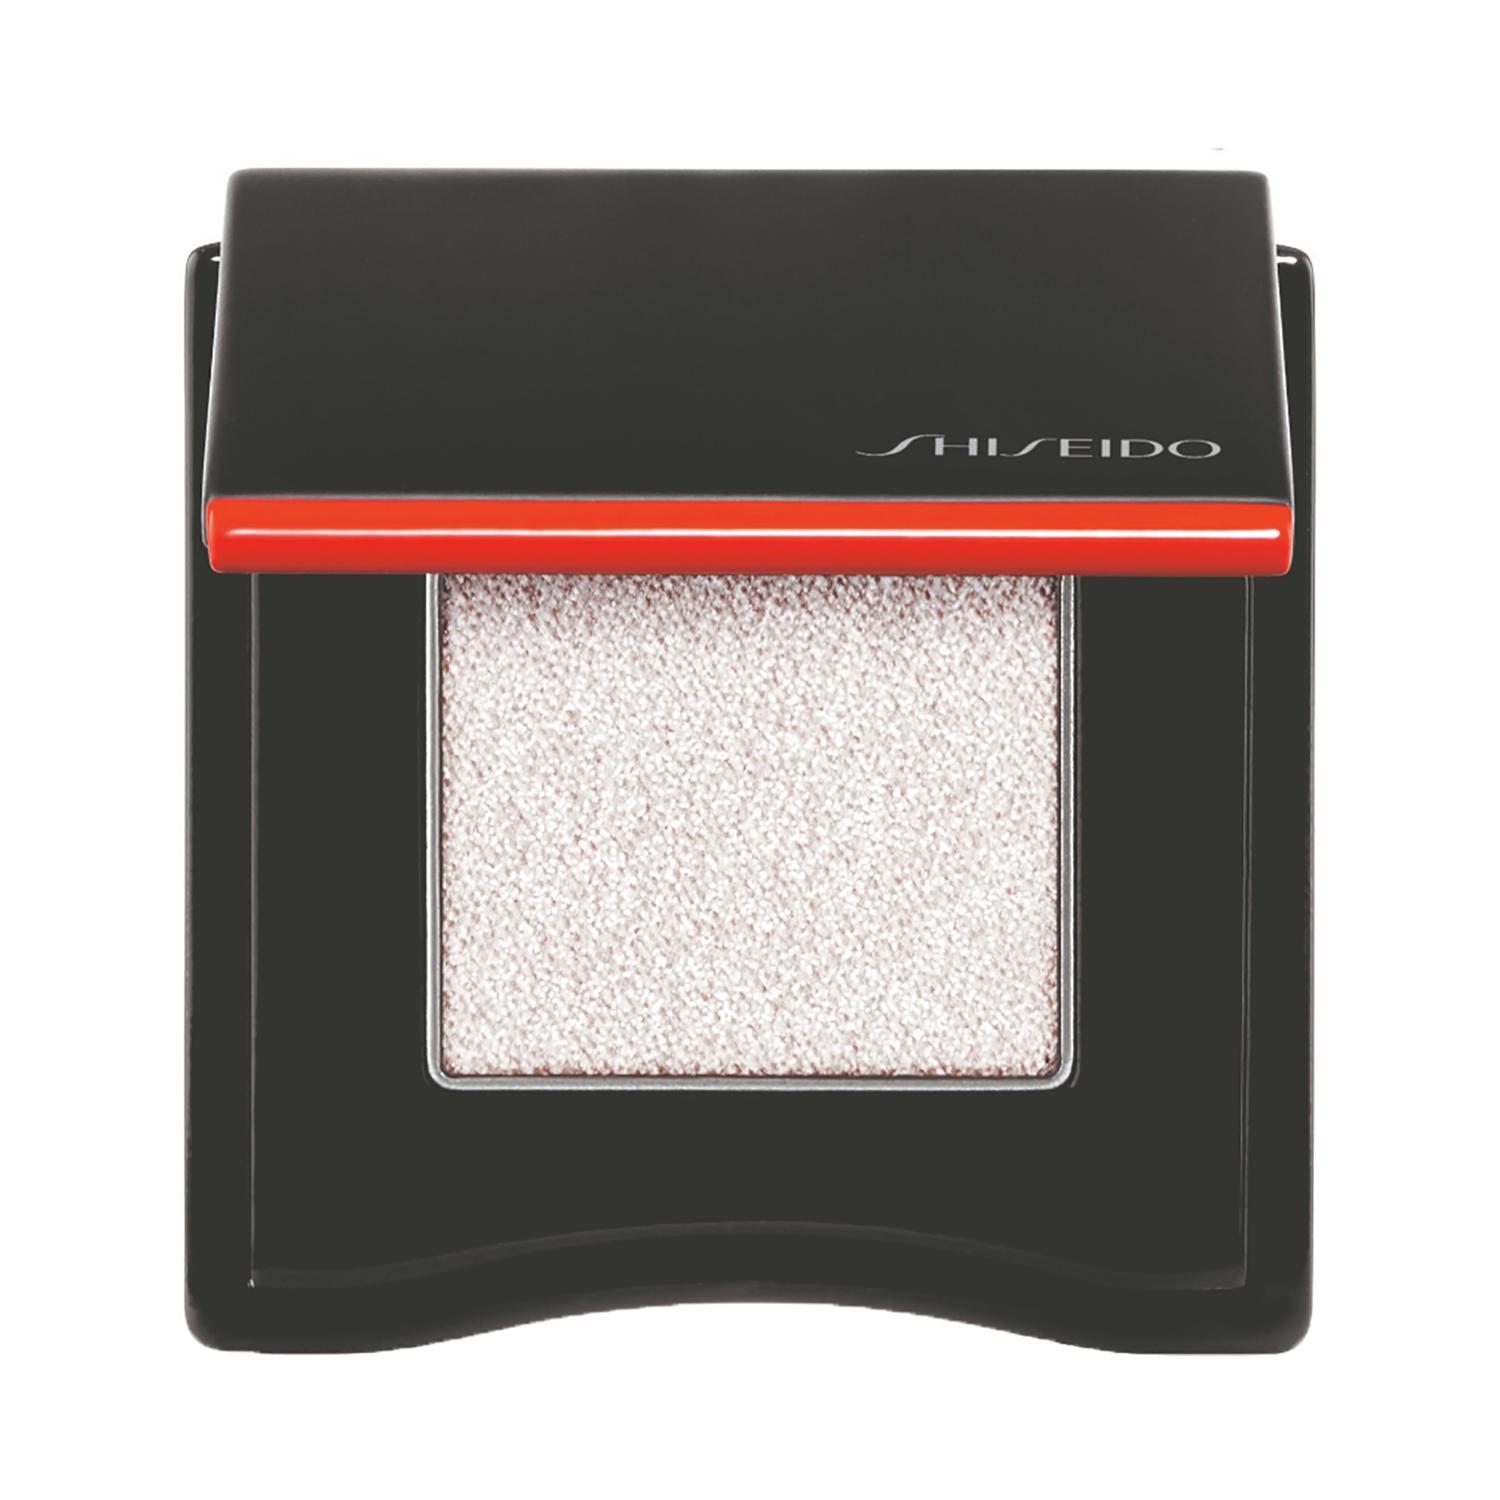 shiseido pop powdergel eye shadow - 01 shin crystal (2.2g)